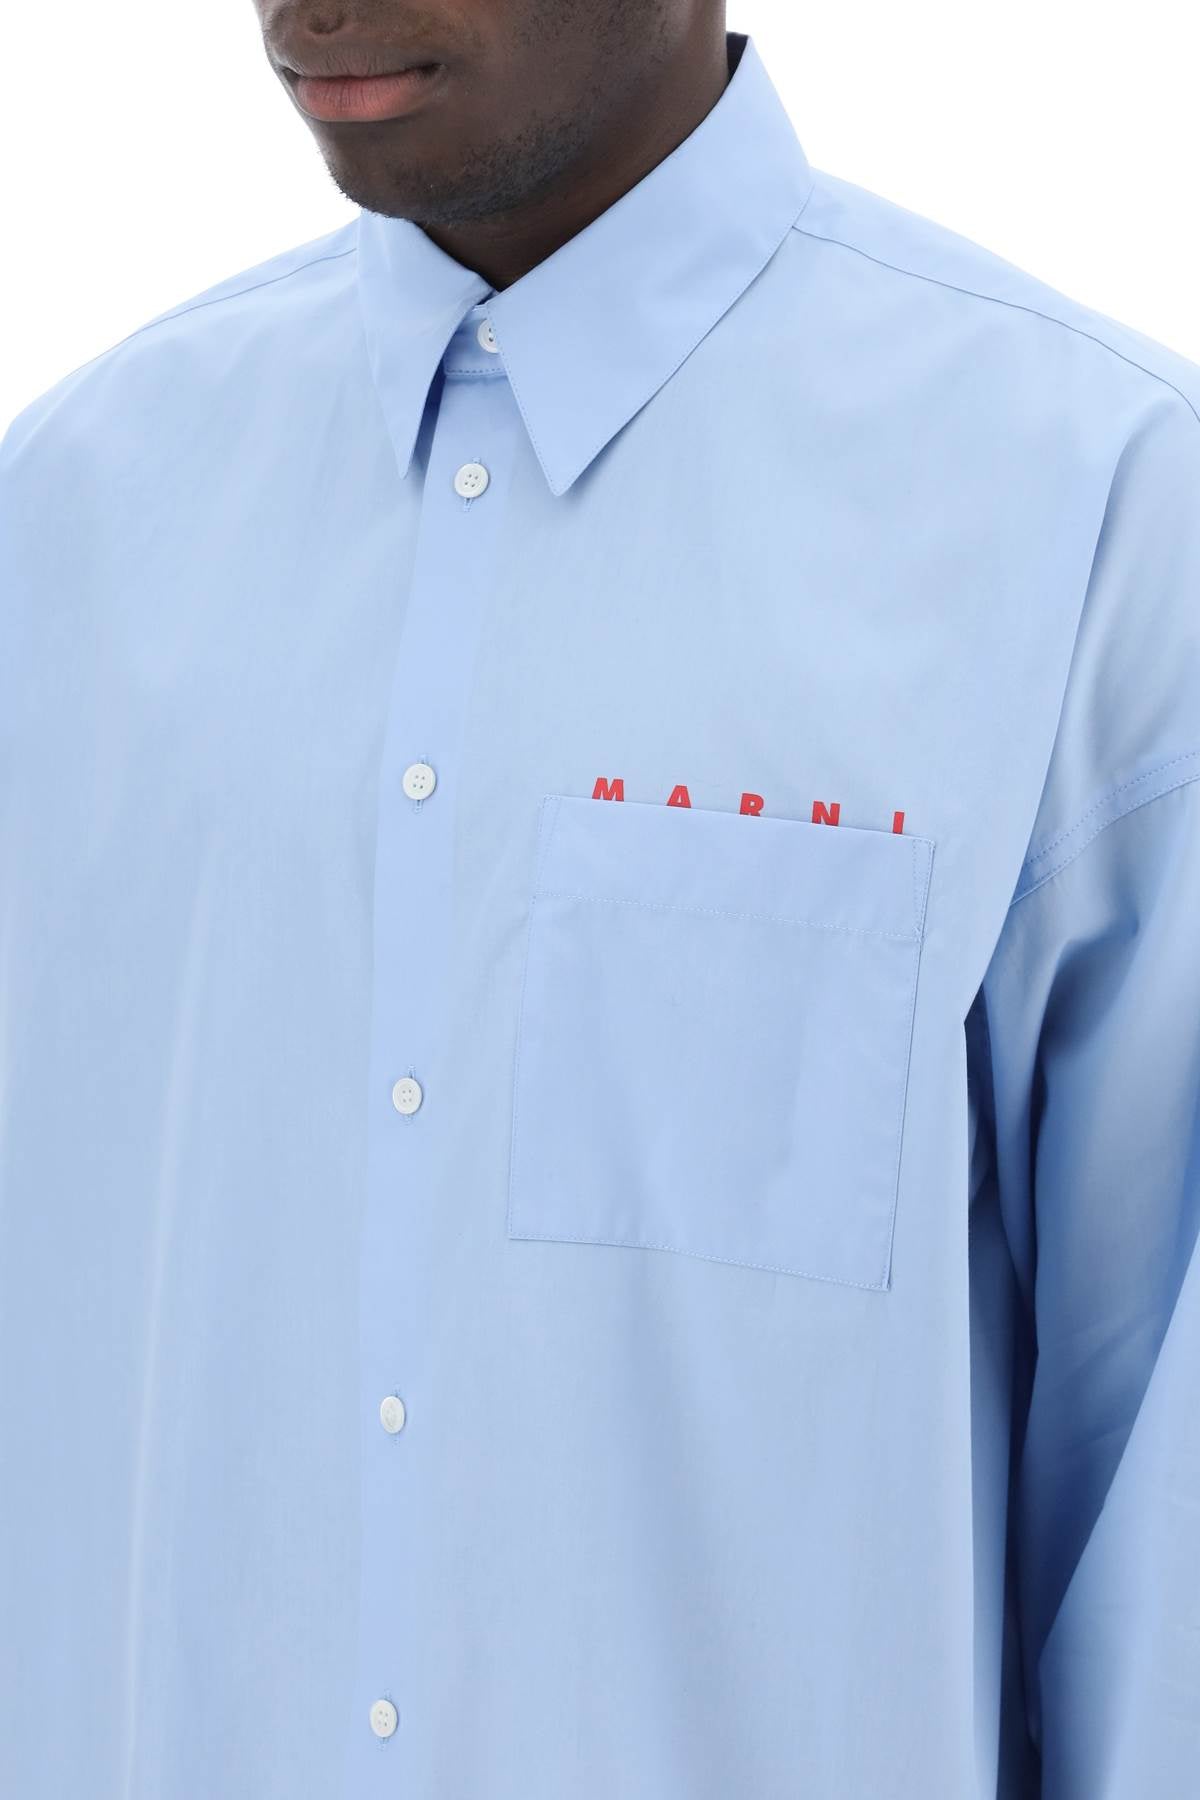 Marni Marni boxy shirt with italian collar